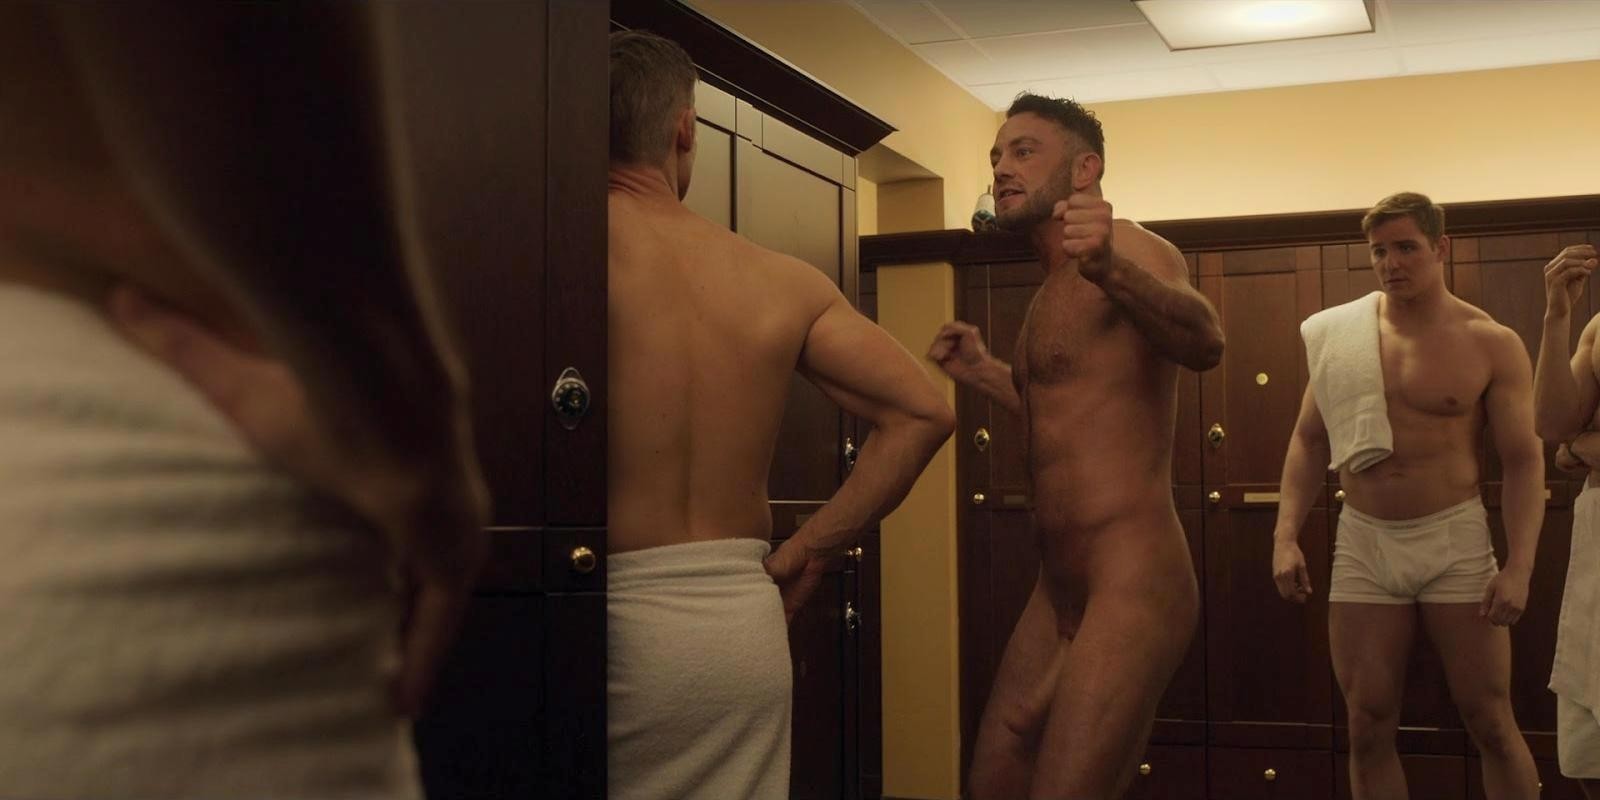 смотреть художественный фильм с голыми мужиками фото 23